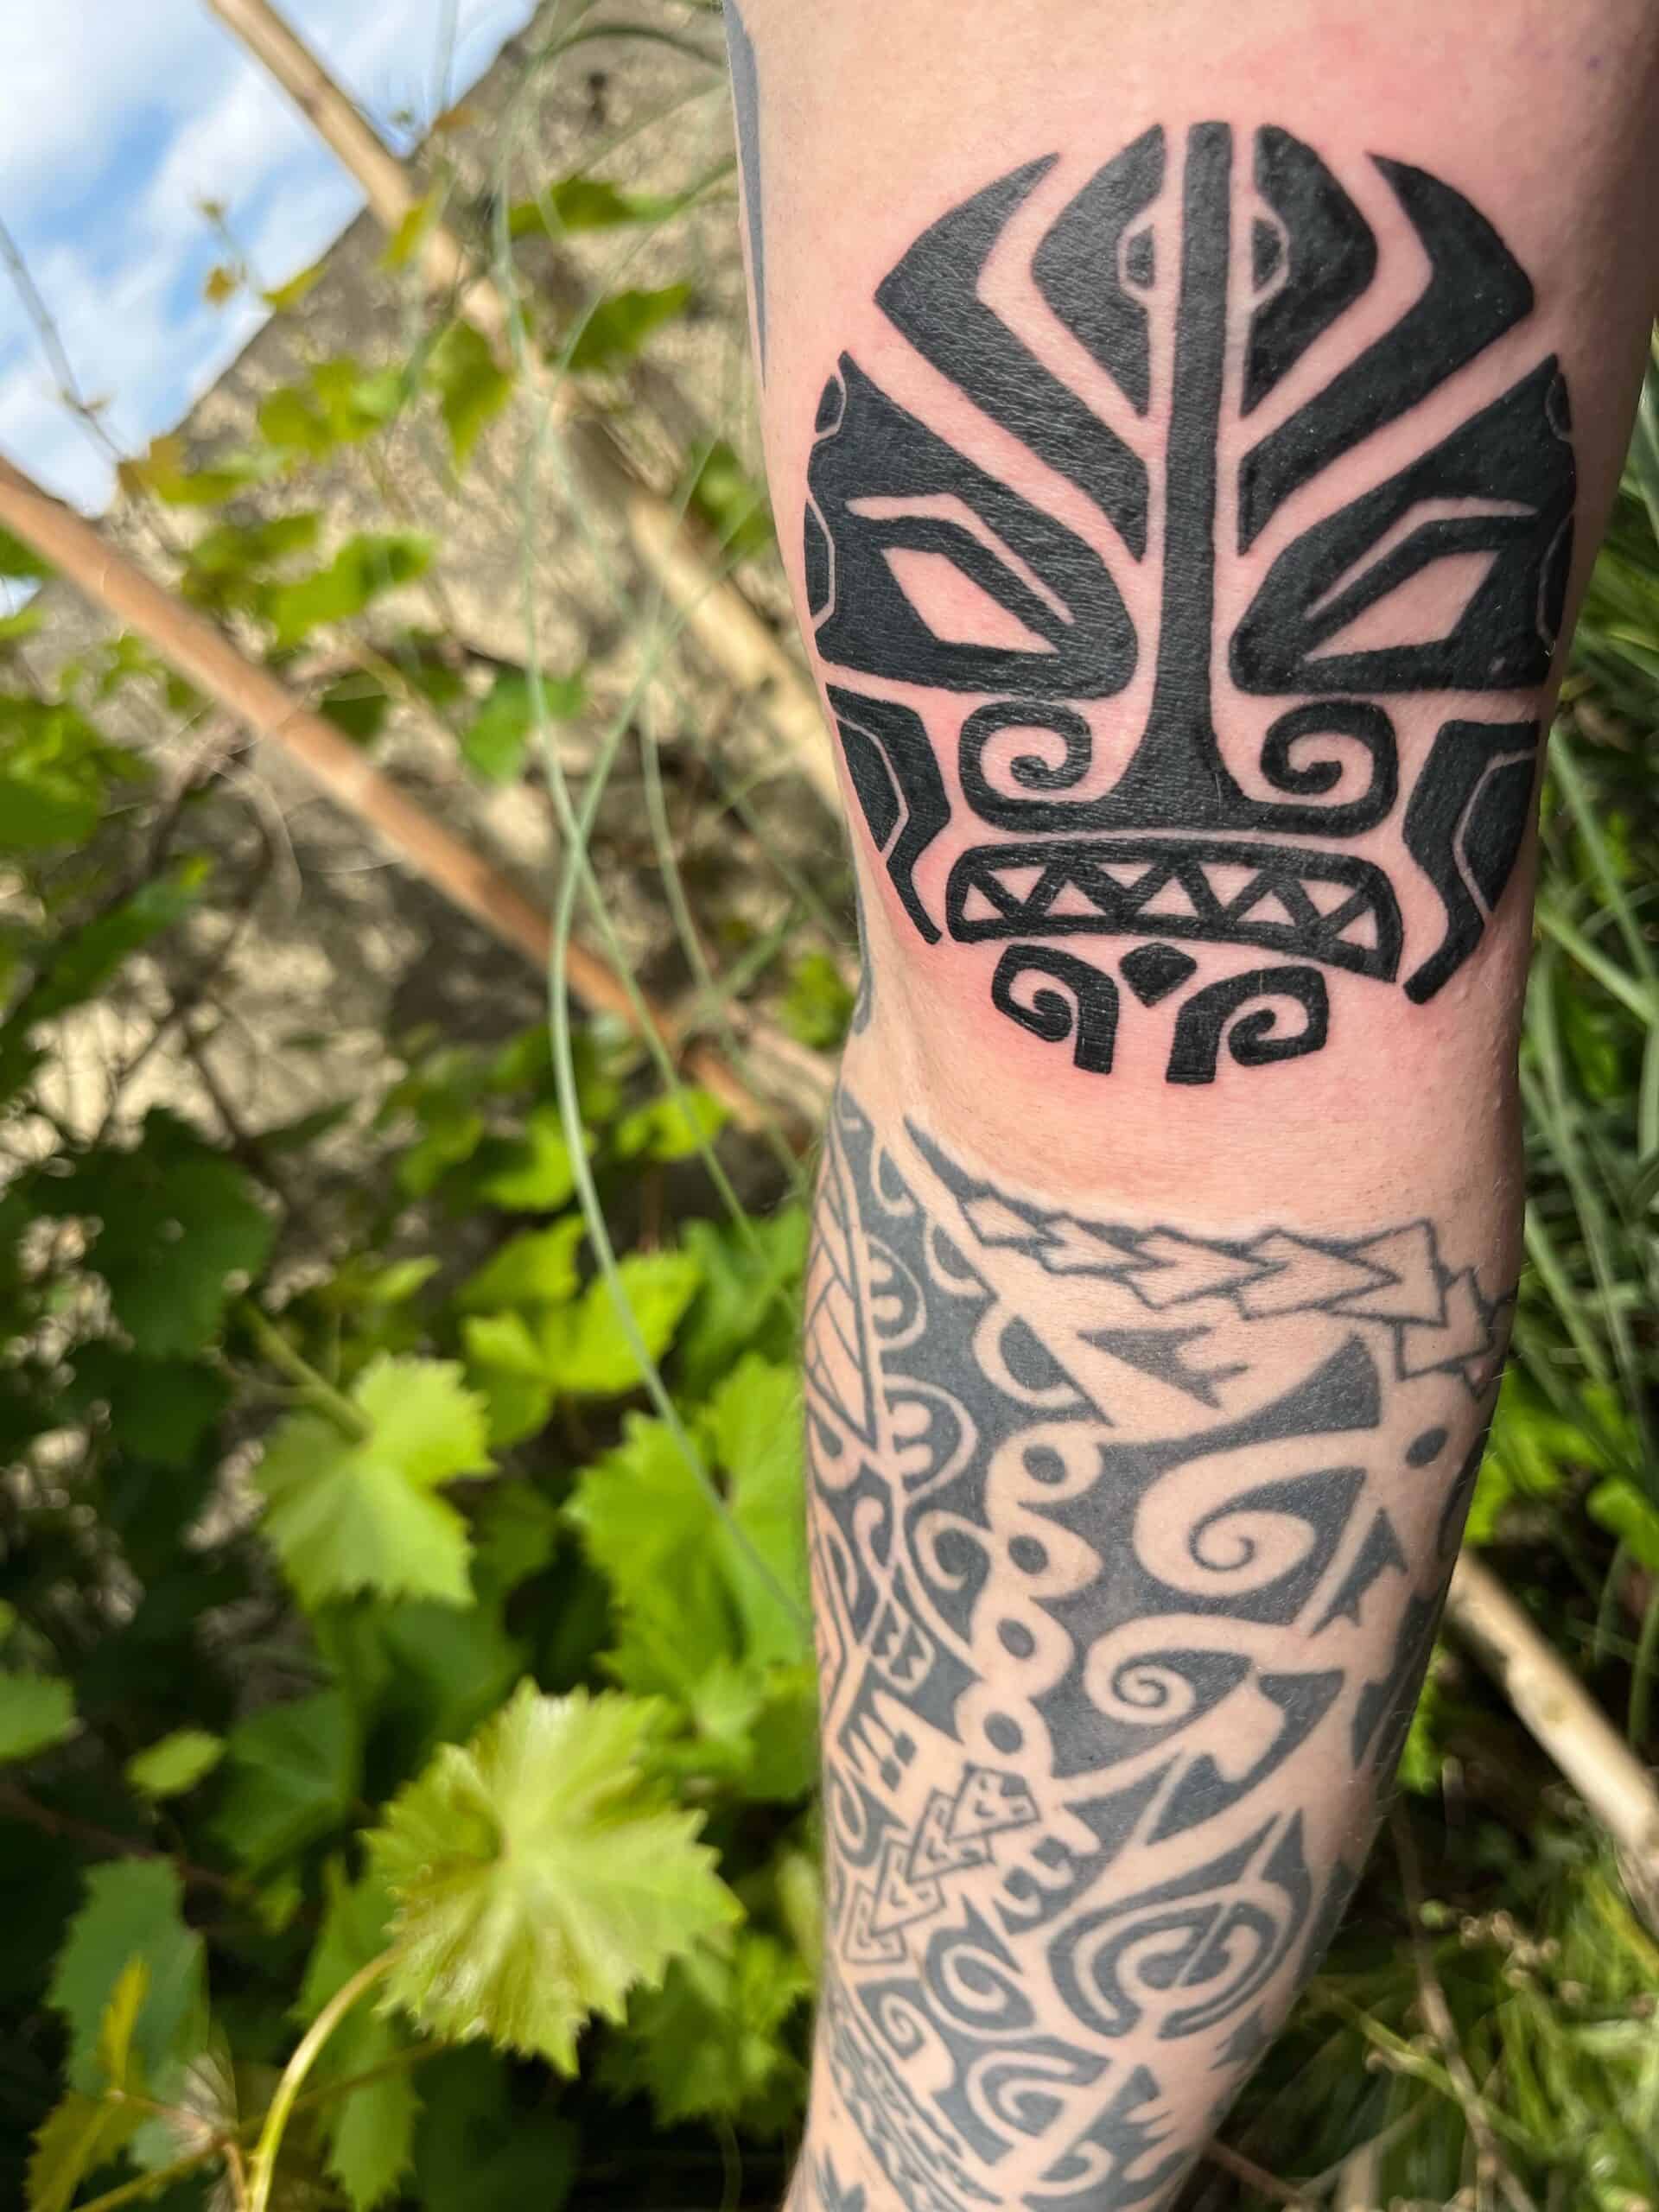 Maori stijl in de vorm van een gezicht, op de binnenkant van de bovenarm.